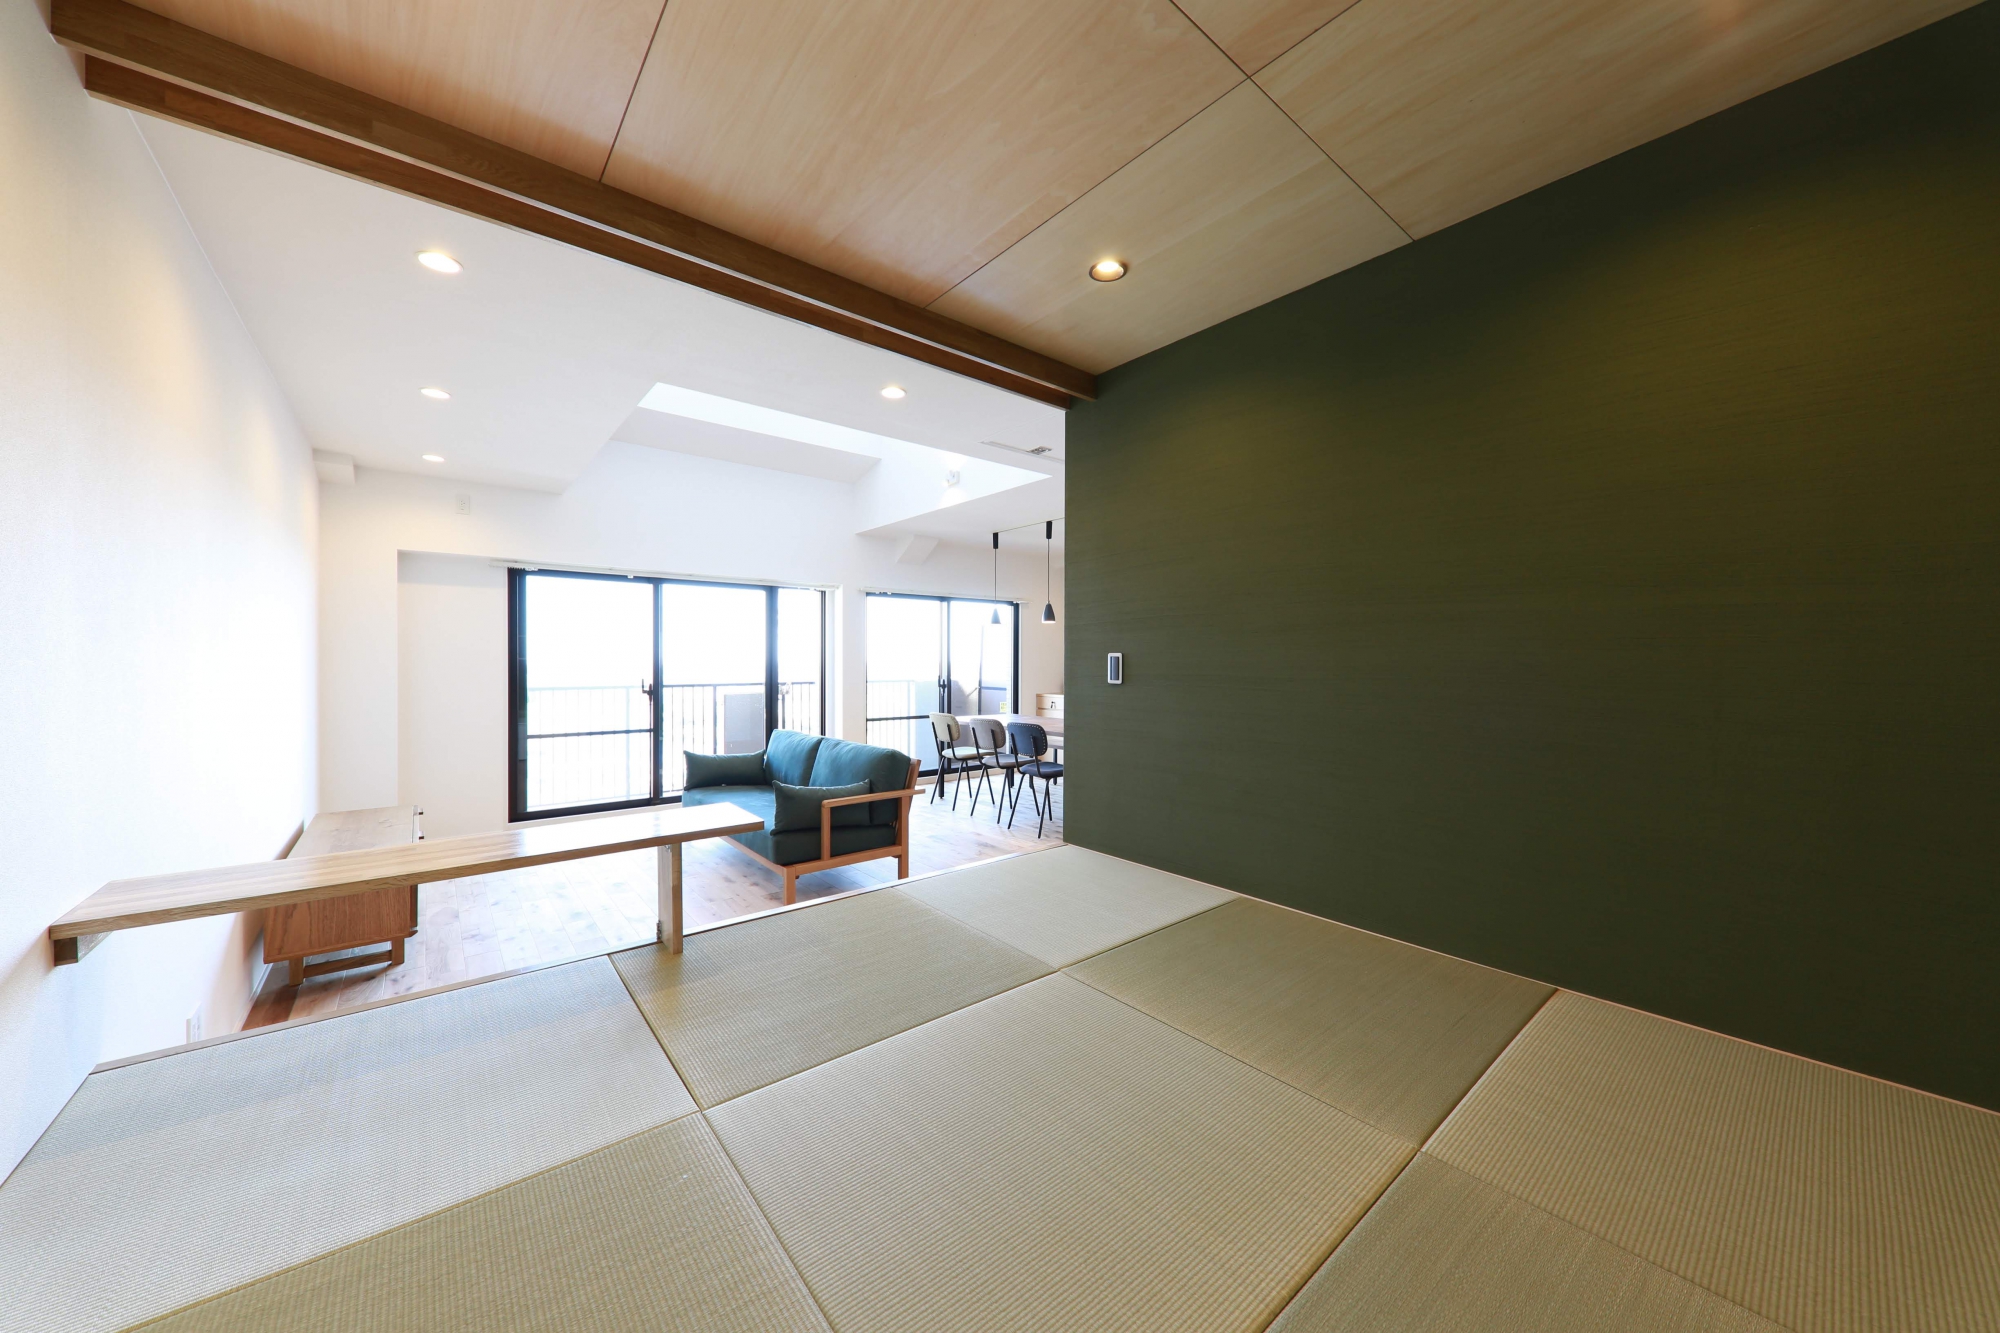 和室の畳は井草の匂いが感じられ、しっかりと「和」を感じる空間に。